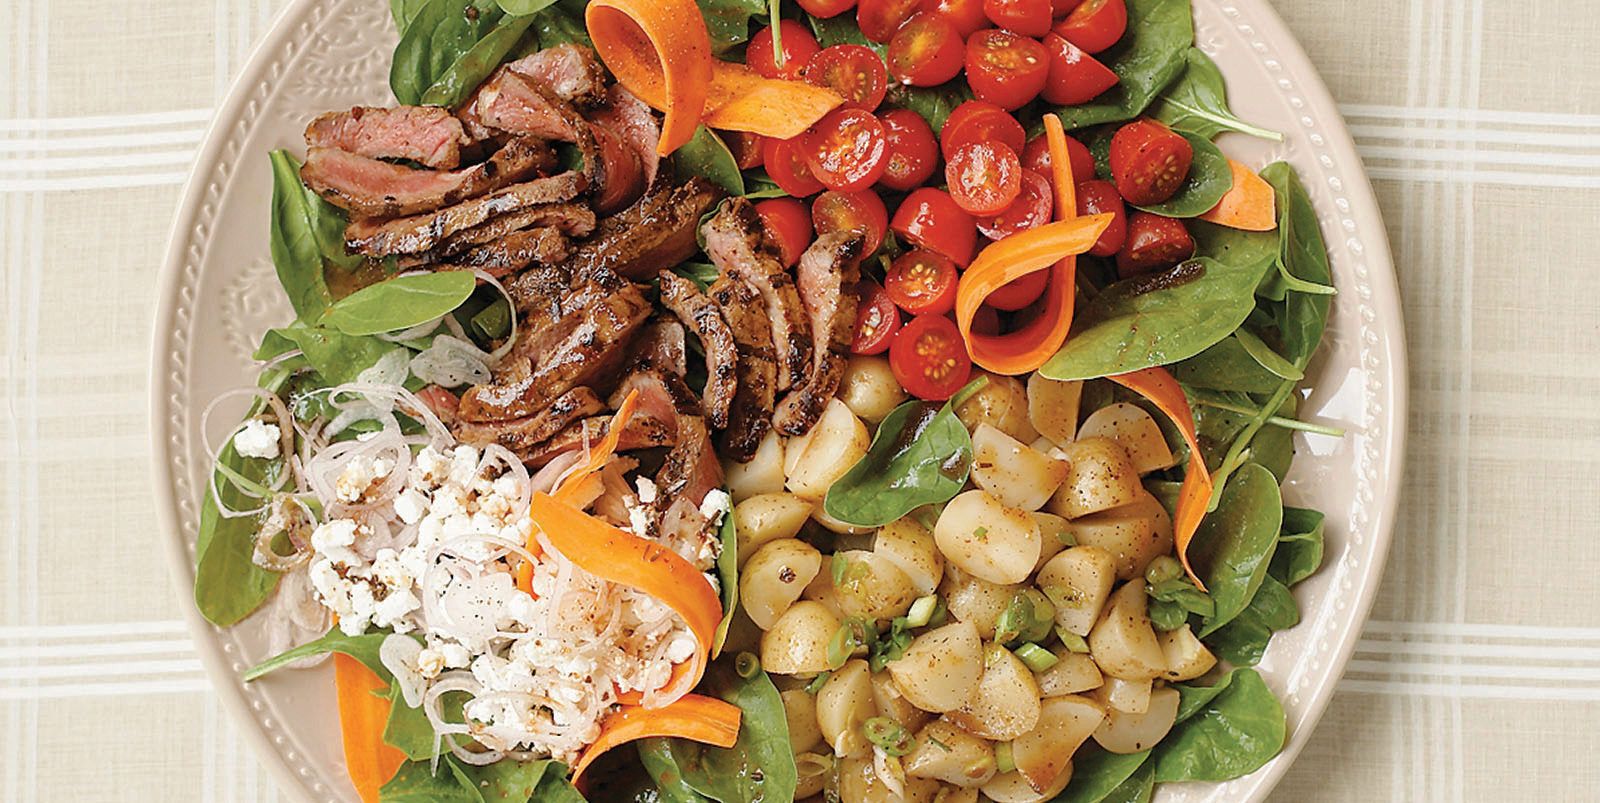 Balsamic steak spinach salad